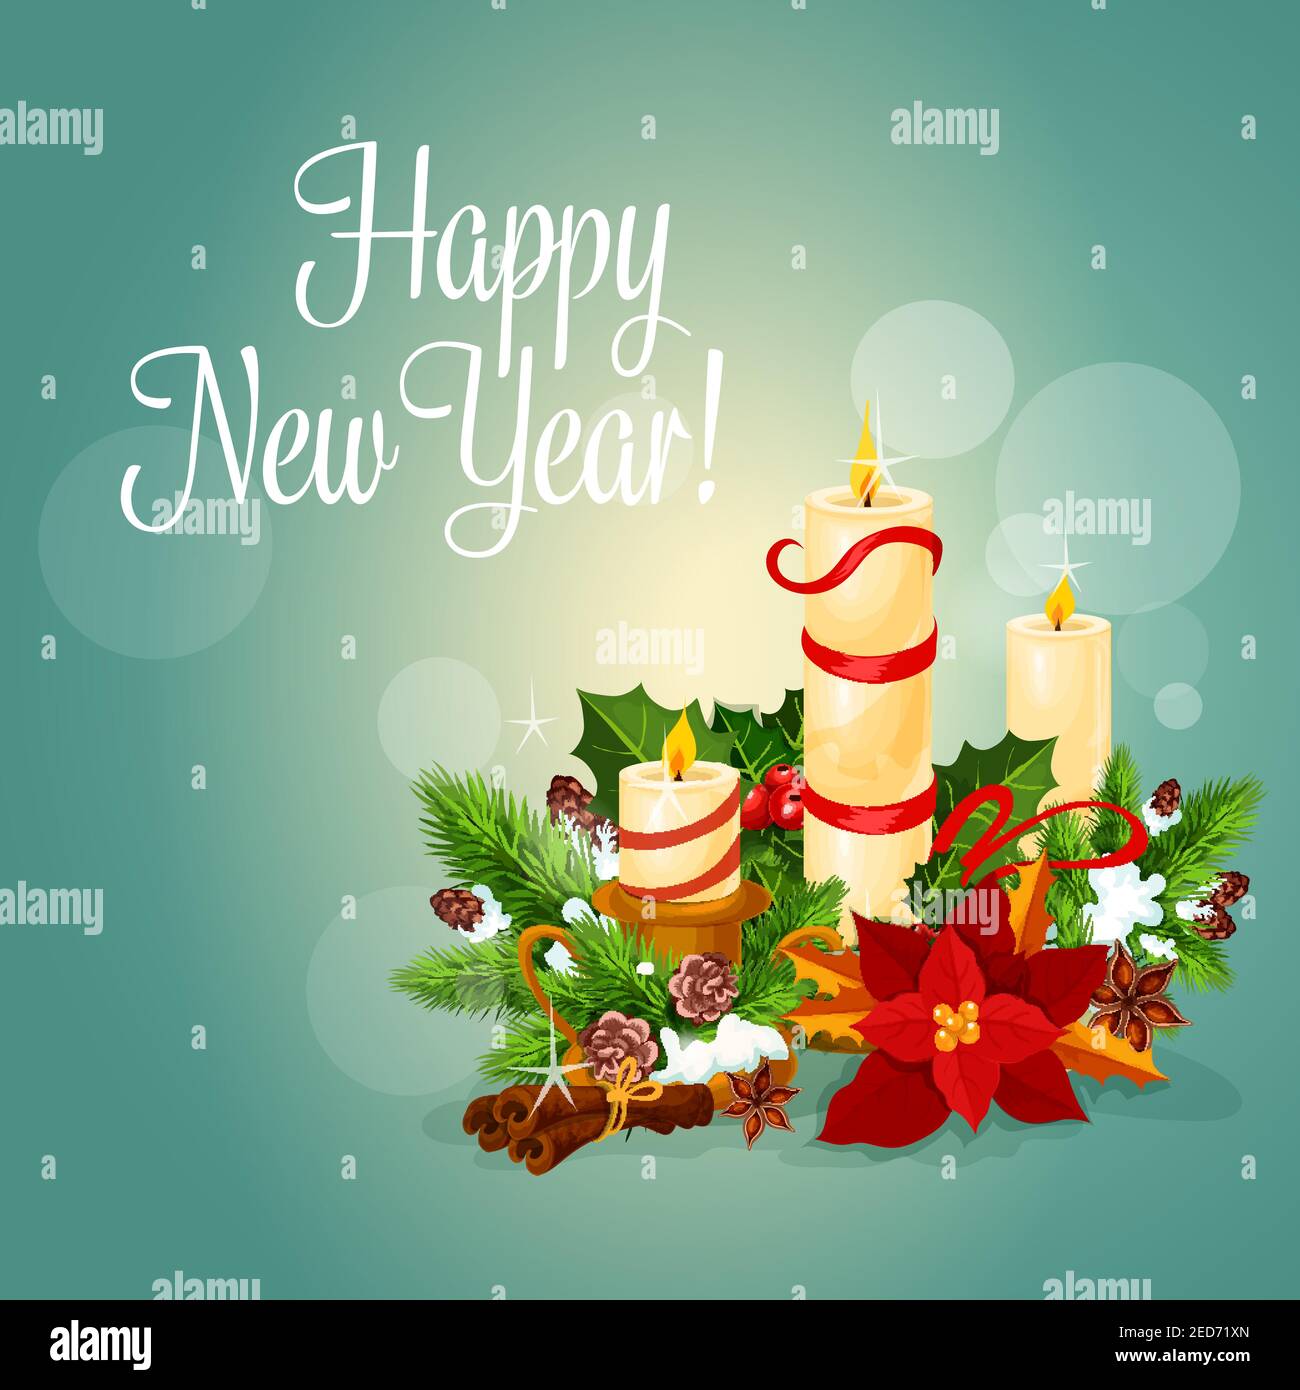 Felice biglietto di auguri per l'anno nuovo. Poster vettoriale con luce candele di natale, foglia di agrifoglio e corona di pino, nastri rossi ricoperti di neve, poinsettia c Illustrazione Vettoriale